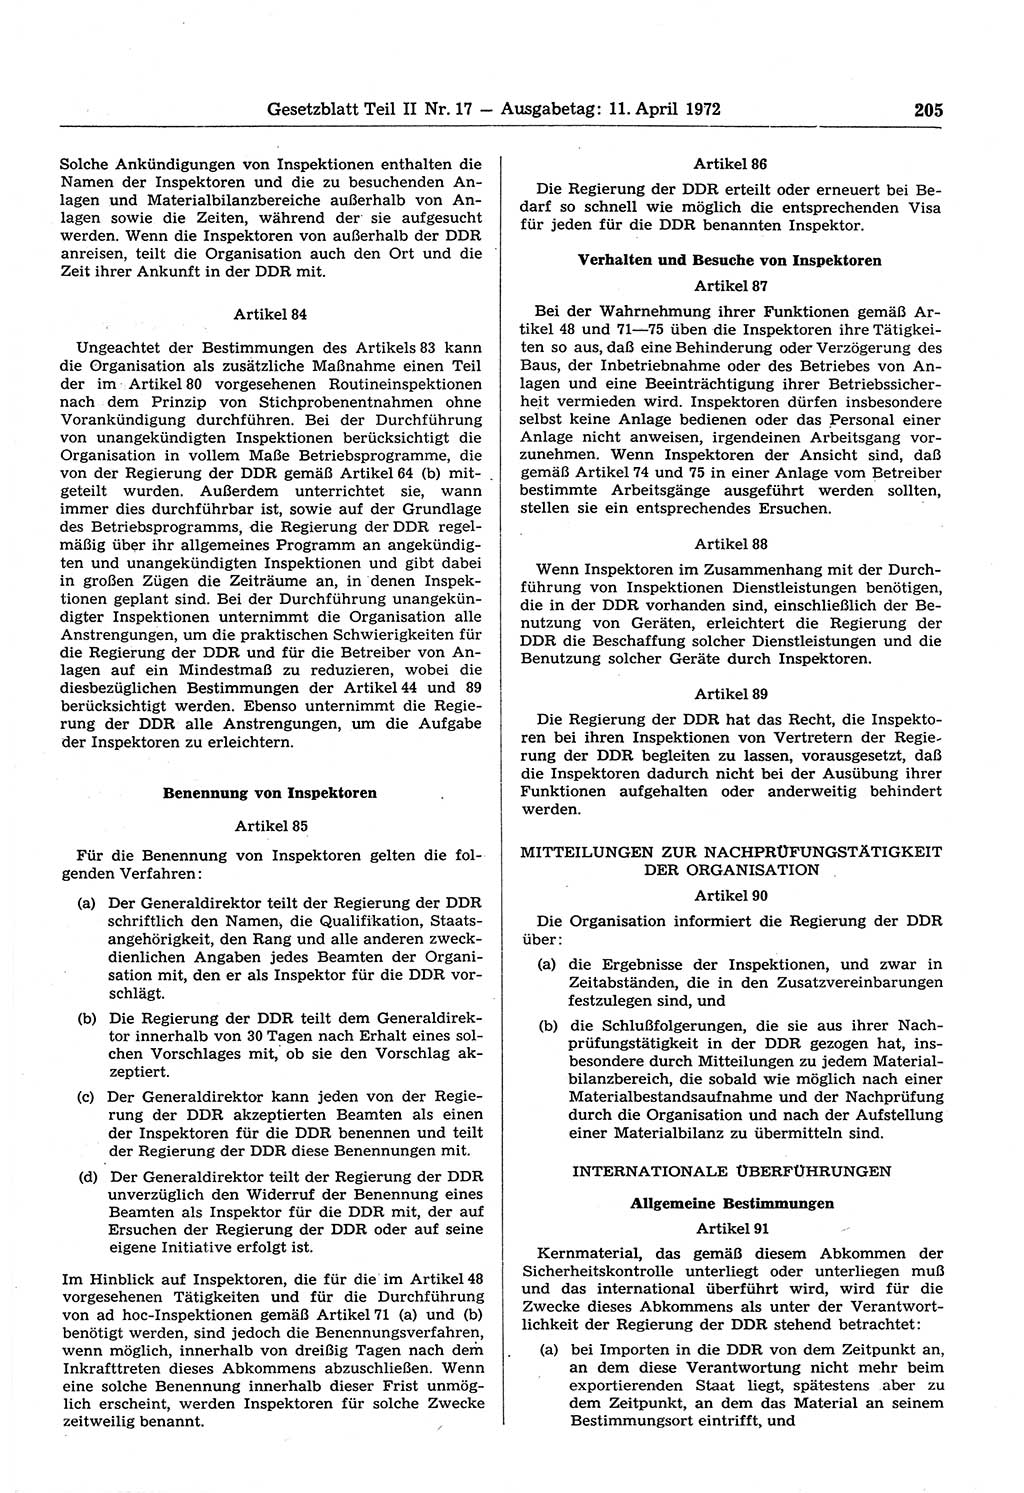 Gesetzblatt (GBl.) der Deutschen Demokratischen Republik (DDR) Teil ⅠⅠ 1972, Seite 205 (GBl. DDR ⅠⅠ 1972, S. 205)